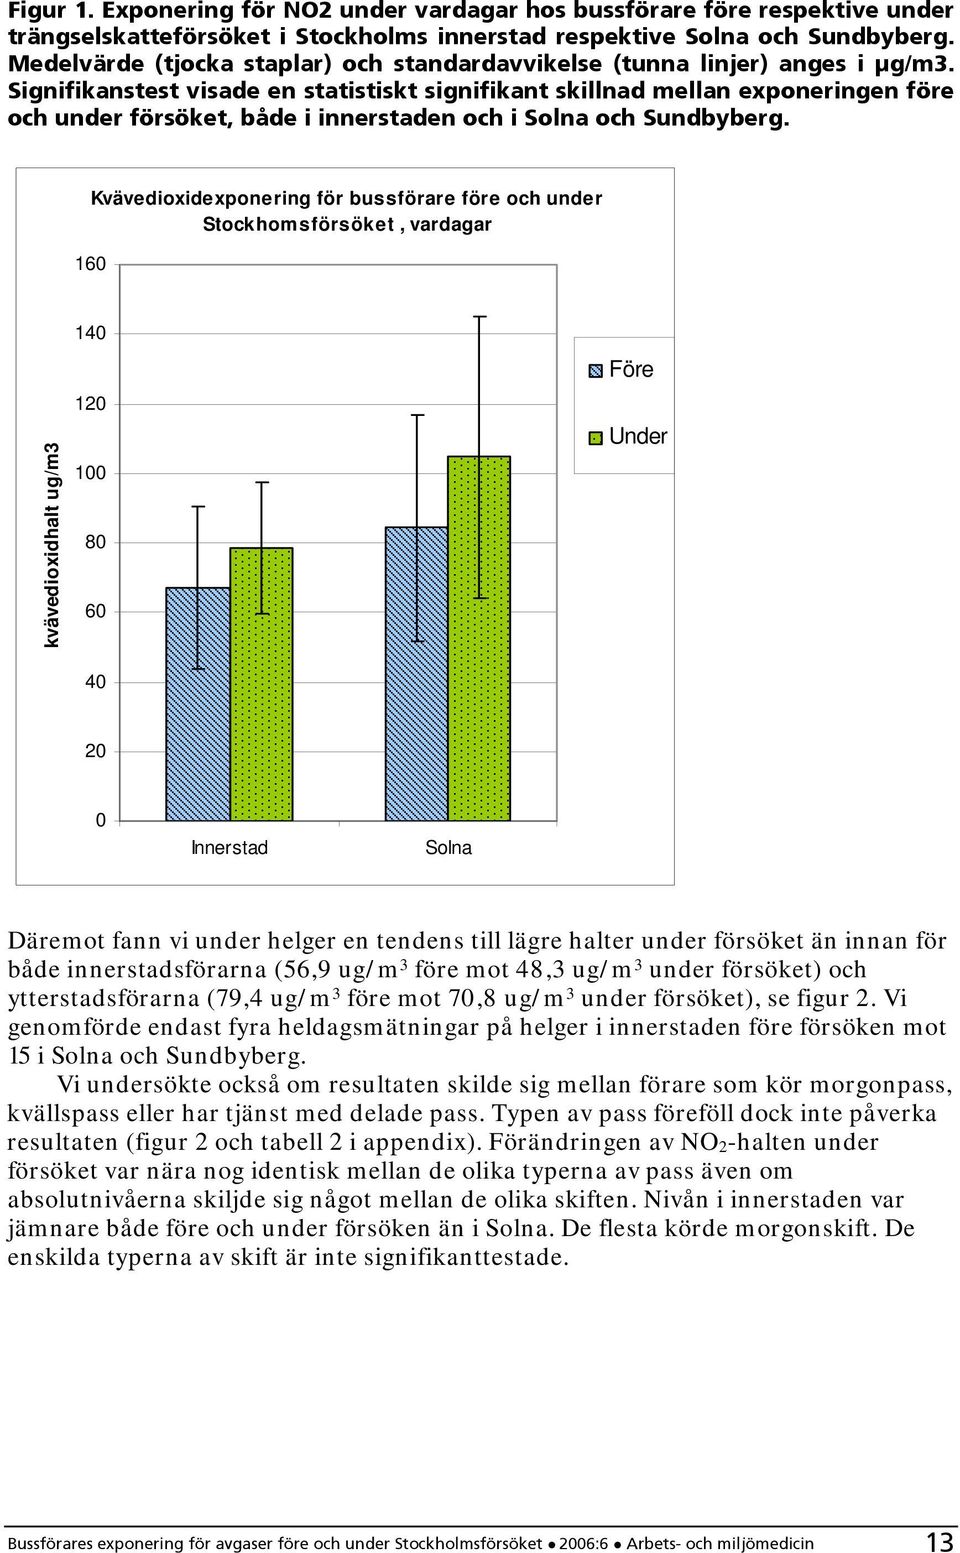 Signifikanstest visade en statistiskt signifikant skillnad mellan exponeringen före och under försöket, både i innerstaden och i Solna och Sundbyberg.